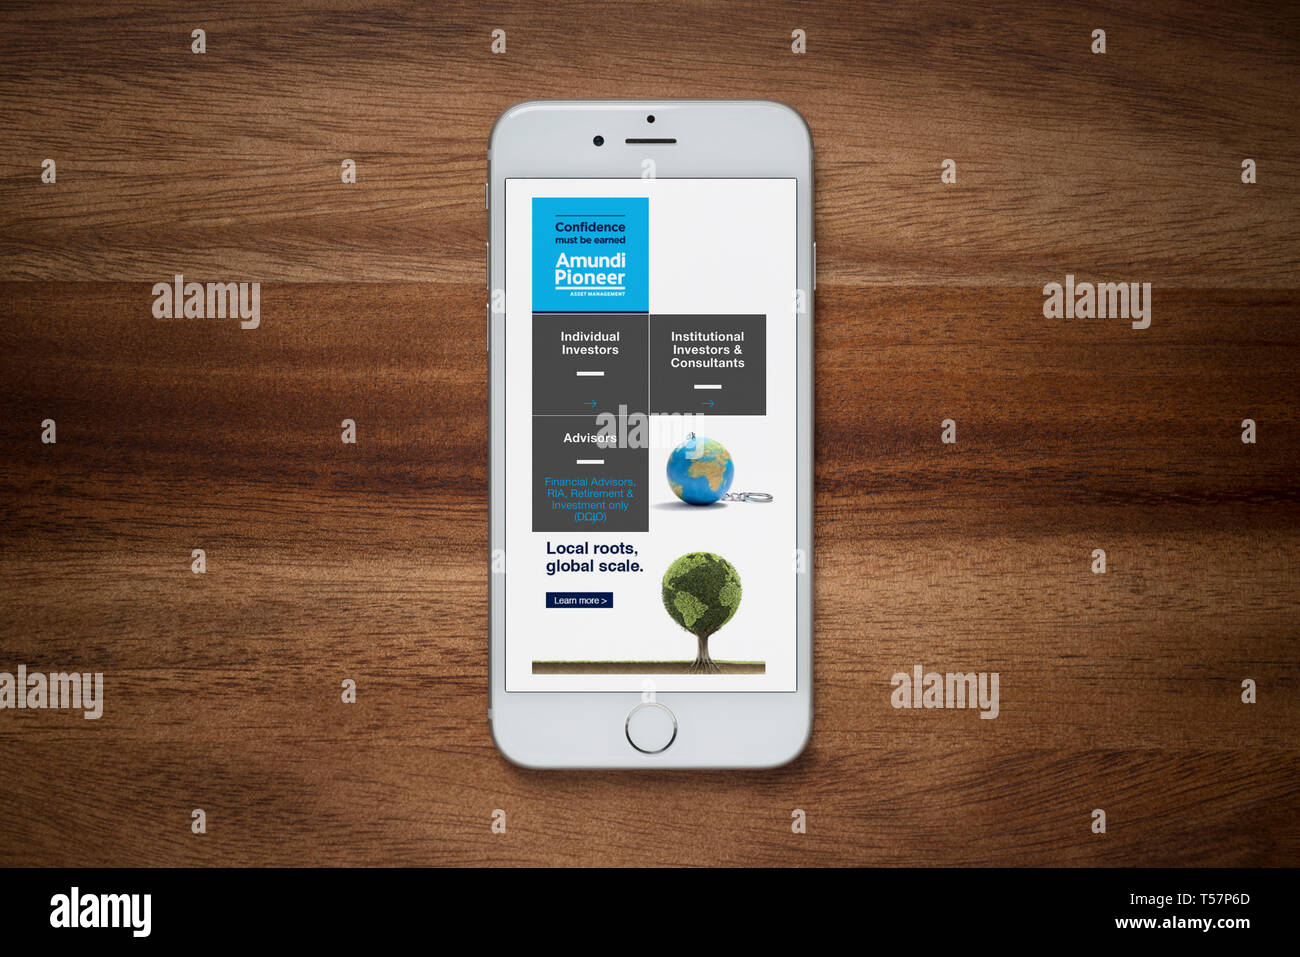 Un iPhone montrant l'Amundi Asset Management site web repose sur une table en bois brut (usage éditorial uniquement). Banque D'Images